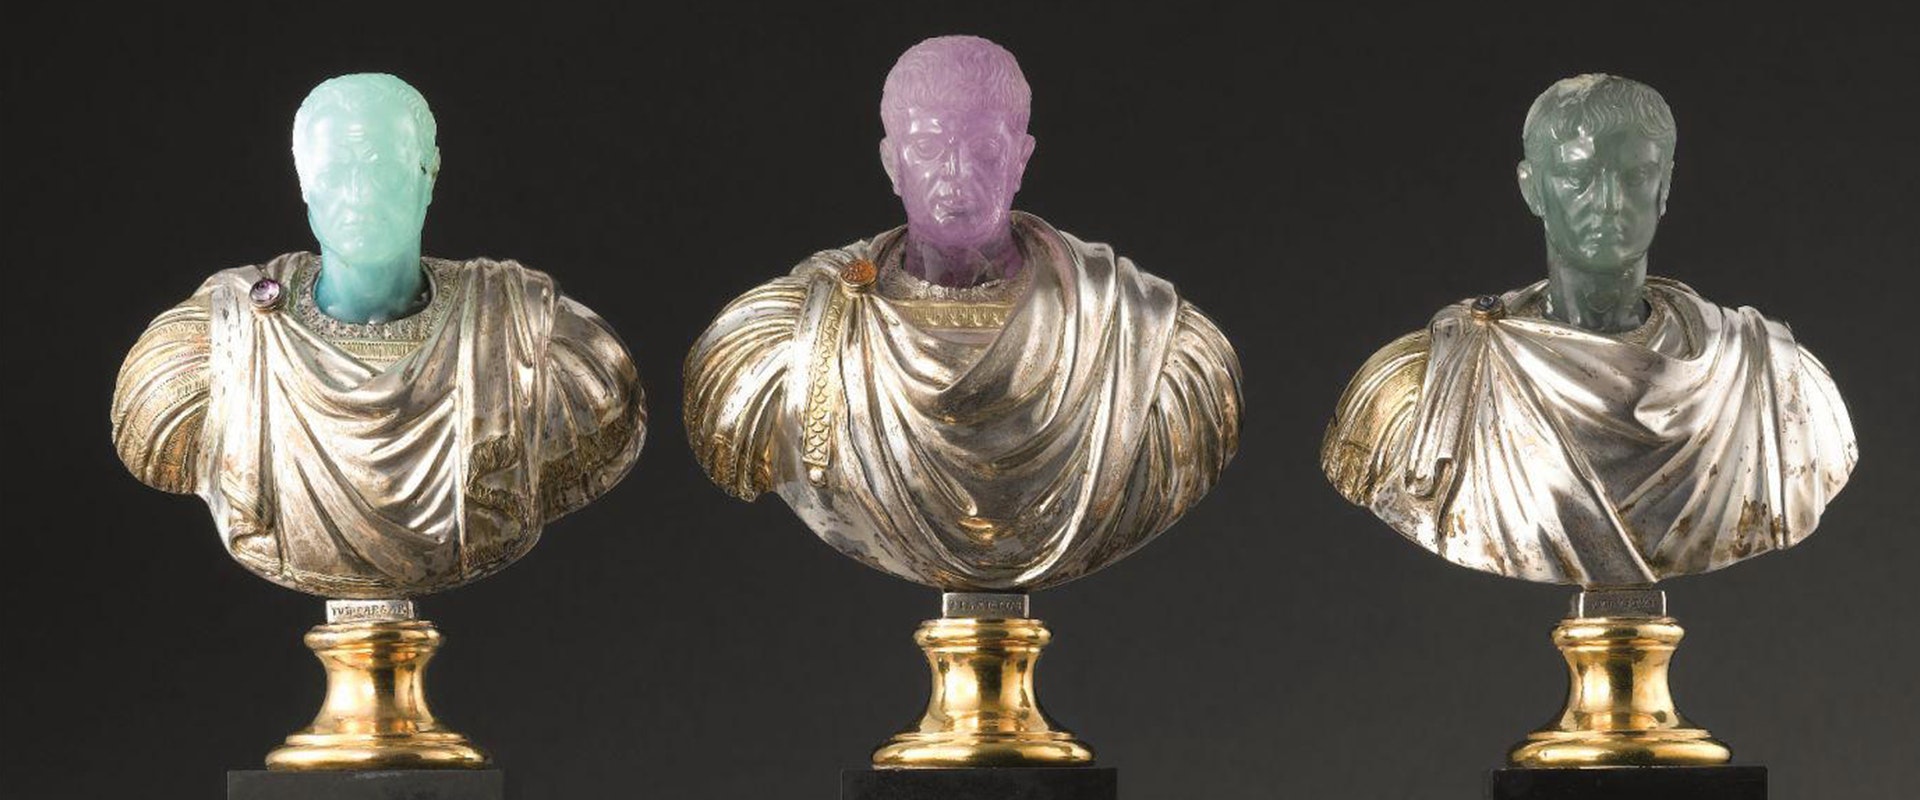 Splendida Minima - Piccole sculture preziose nelle collezioni medicee: dalla Tribuna di Francesco I de’ Medici al tesoro granducale